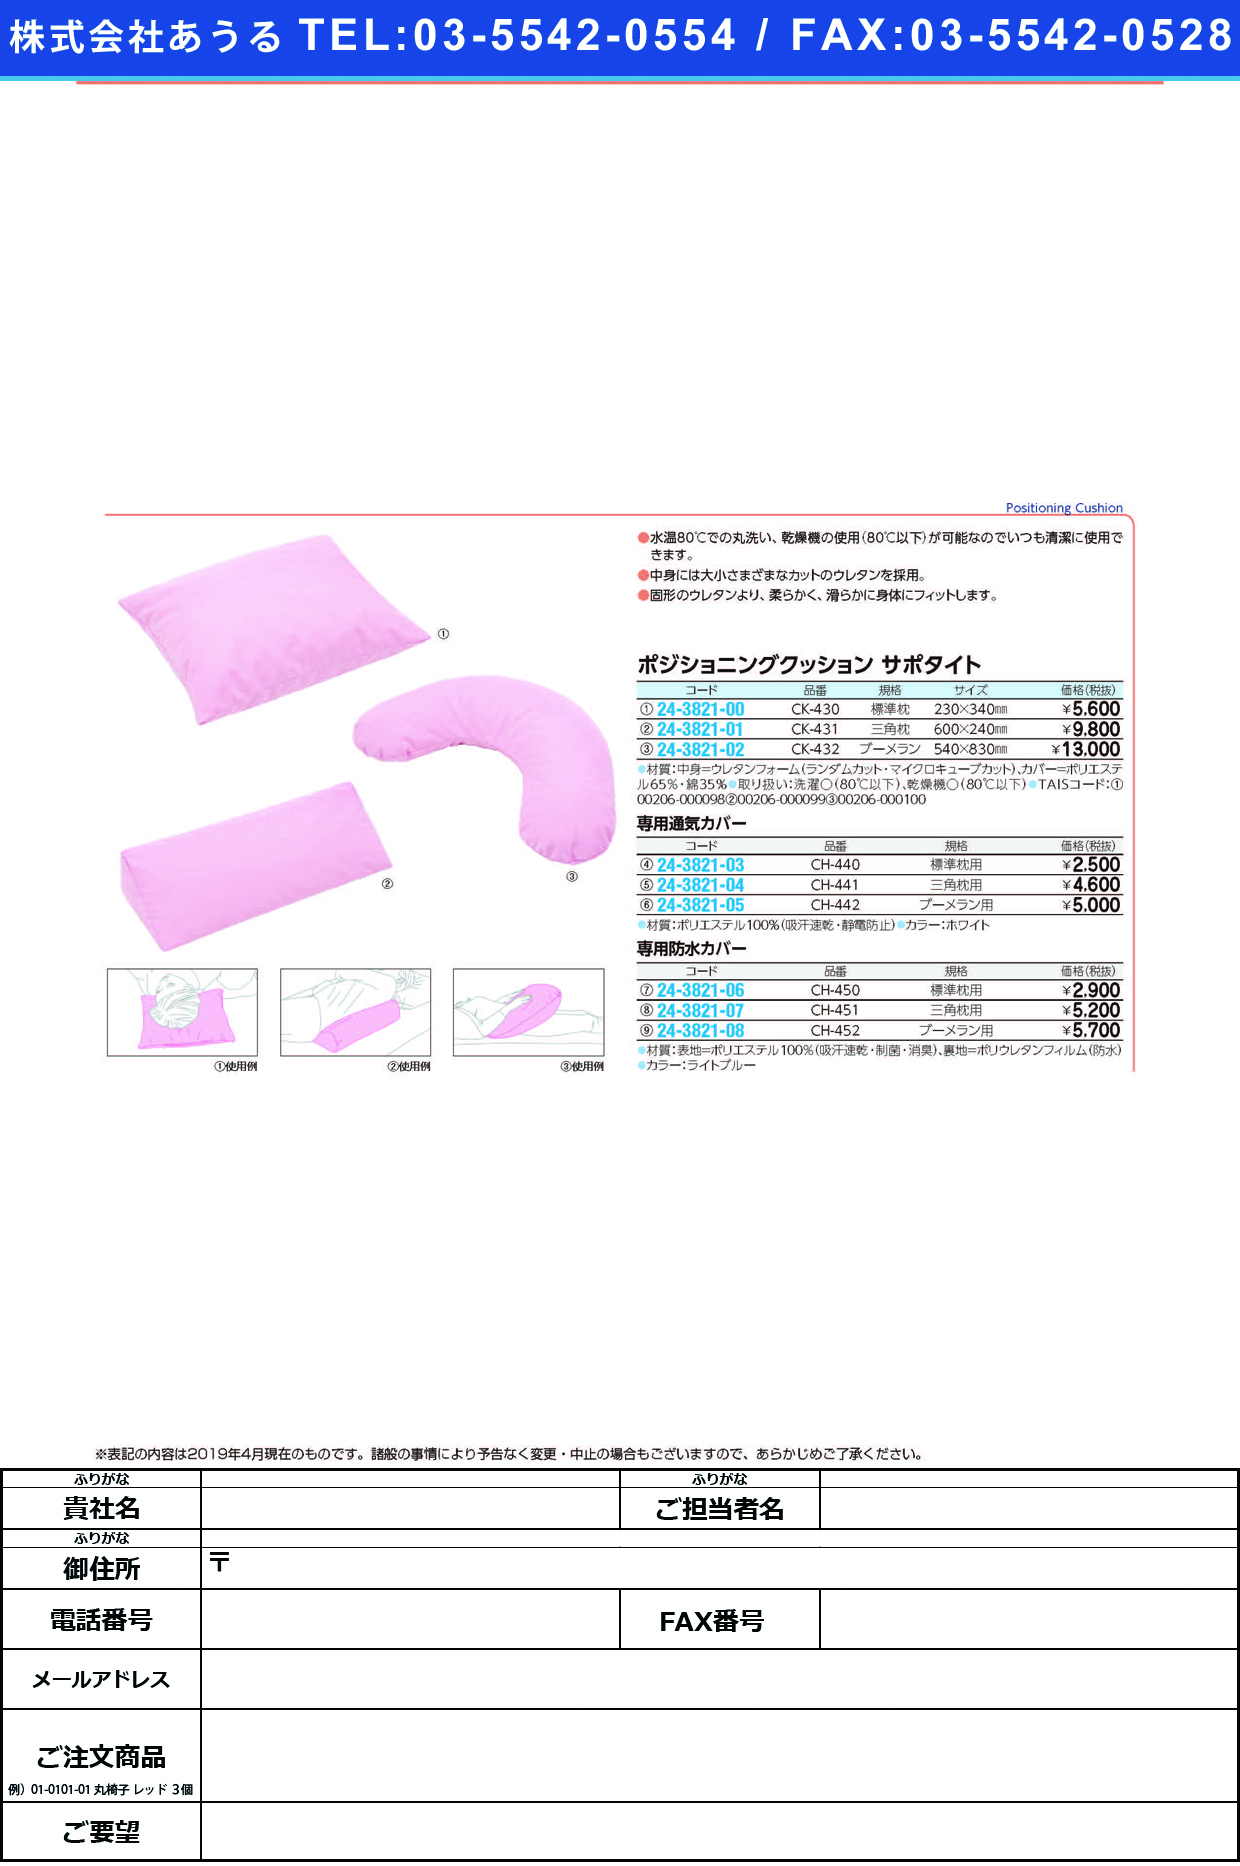 (24-3821-03)サポタイト用通気カバー CH-440(ﾋｮｳｼﾞｭﾝﾏｸﾗﾖｳ) ｻﾎﾟﾀｲﾄﾖｳﾂｳｷｶﾊﾞｰ(ケープ)【1個単位】【2019年カタログ商品】